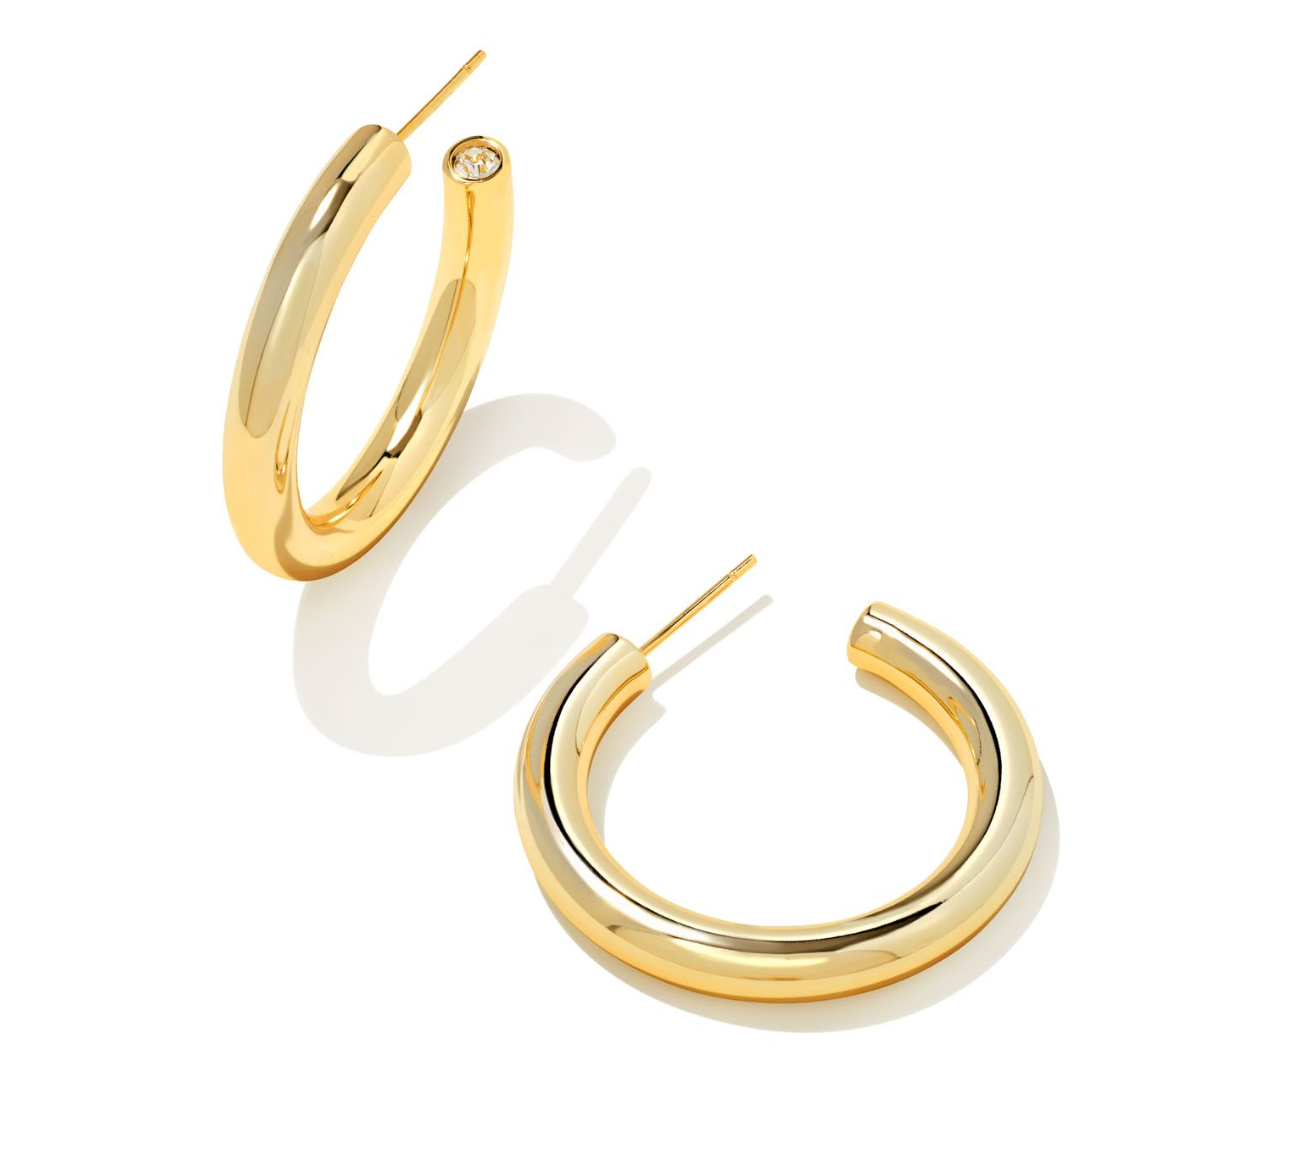 Colette Hoop Earrings in Gold | KENDRA SCOTT - The Street Boutique 